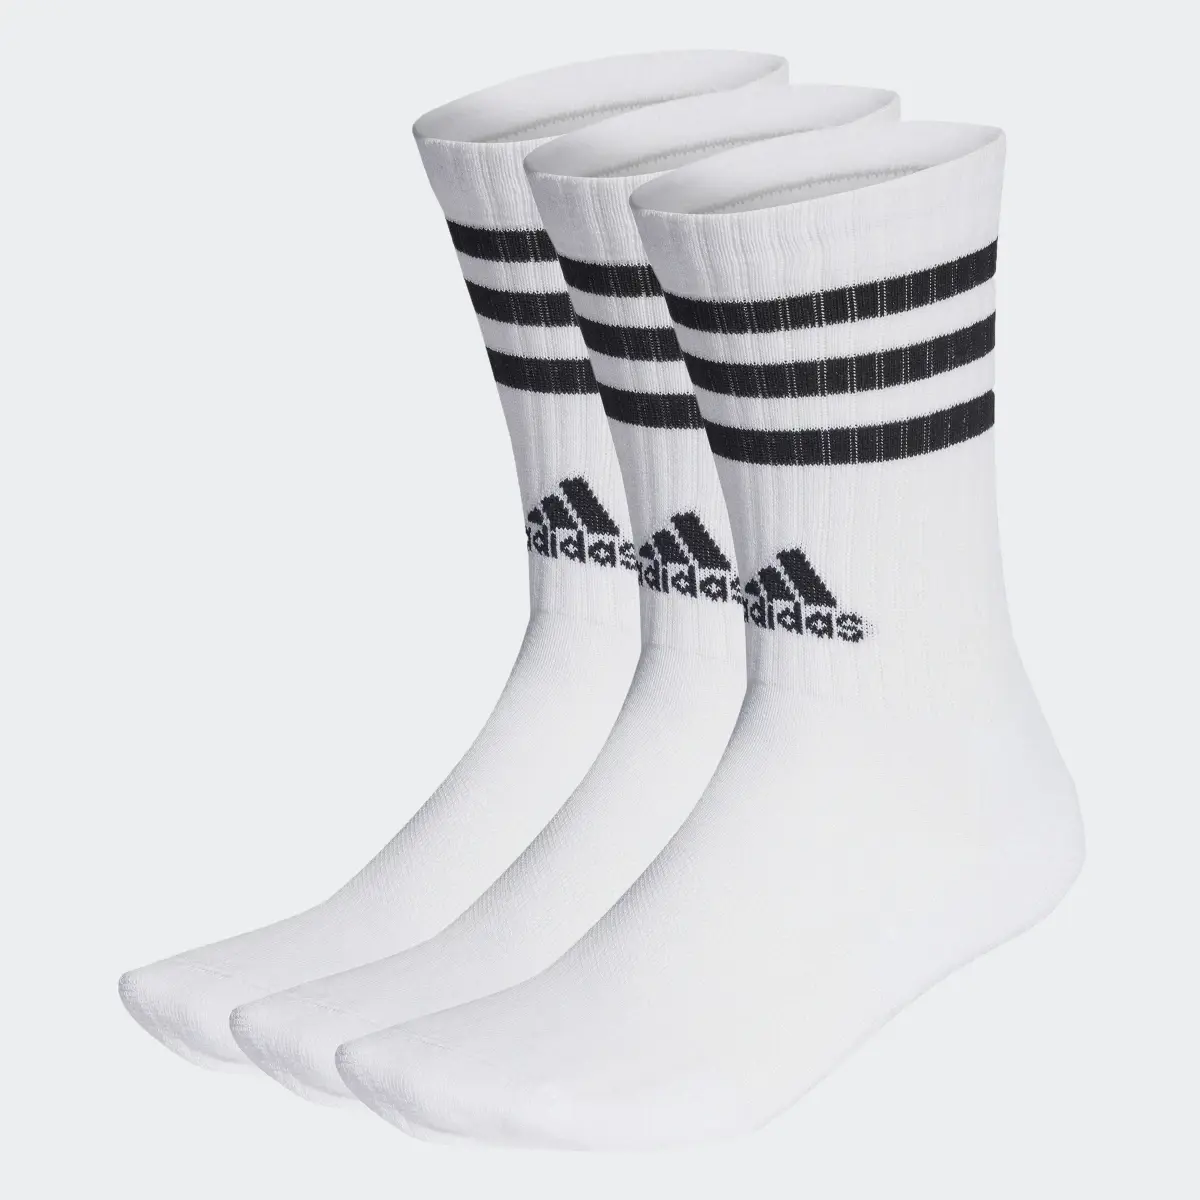 Adidas 3-Stripes Yastıklamalı Bilekli Çorap - 3 Çift. 2